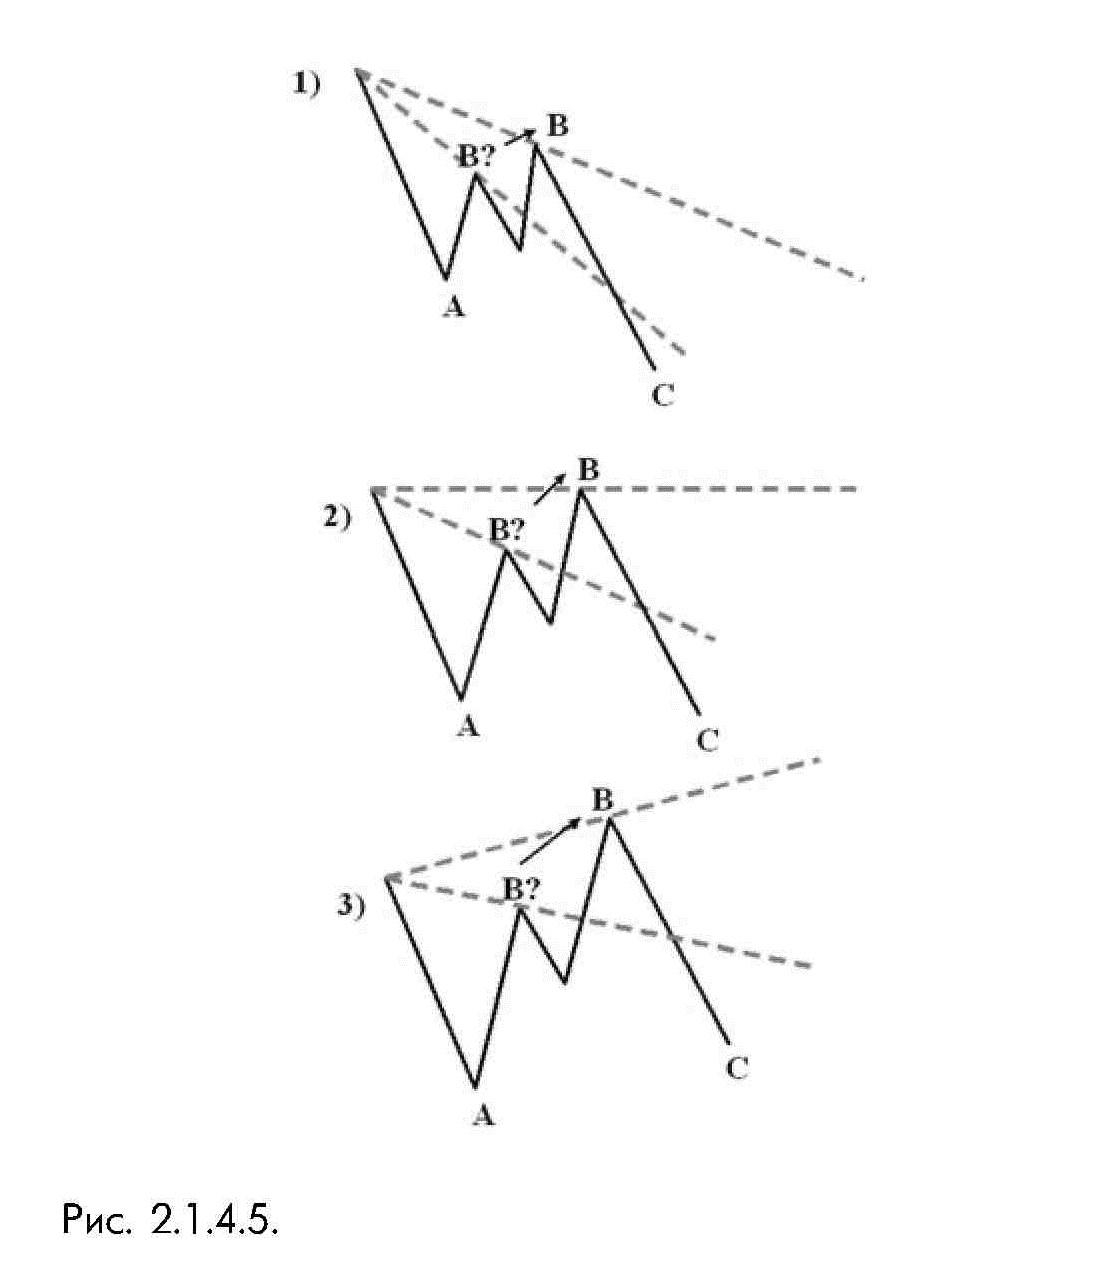 2_1_4_5_ Возможные варианты построения сигнальной линии О-В плоской коррекции теории волн Эллиотта